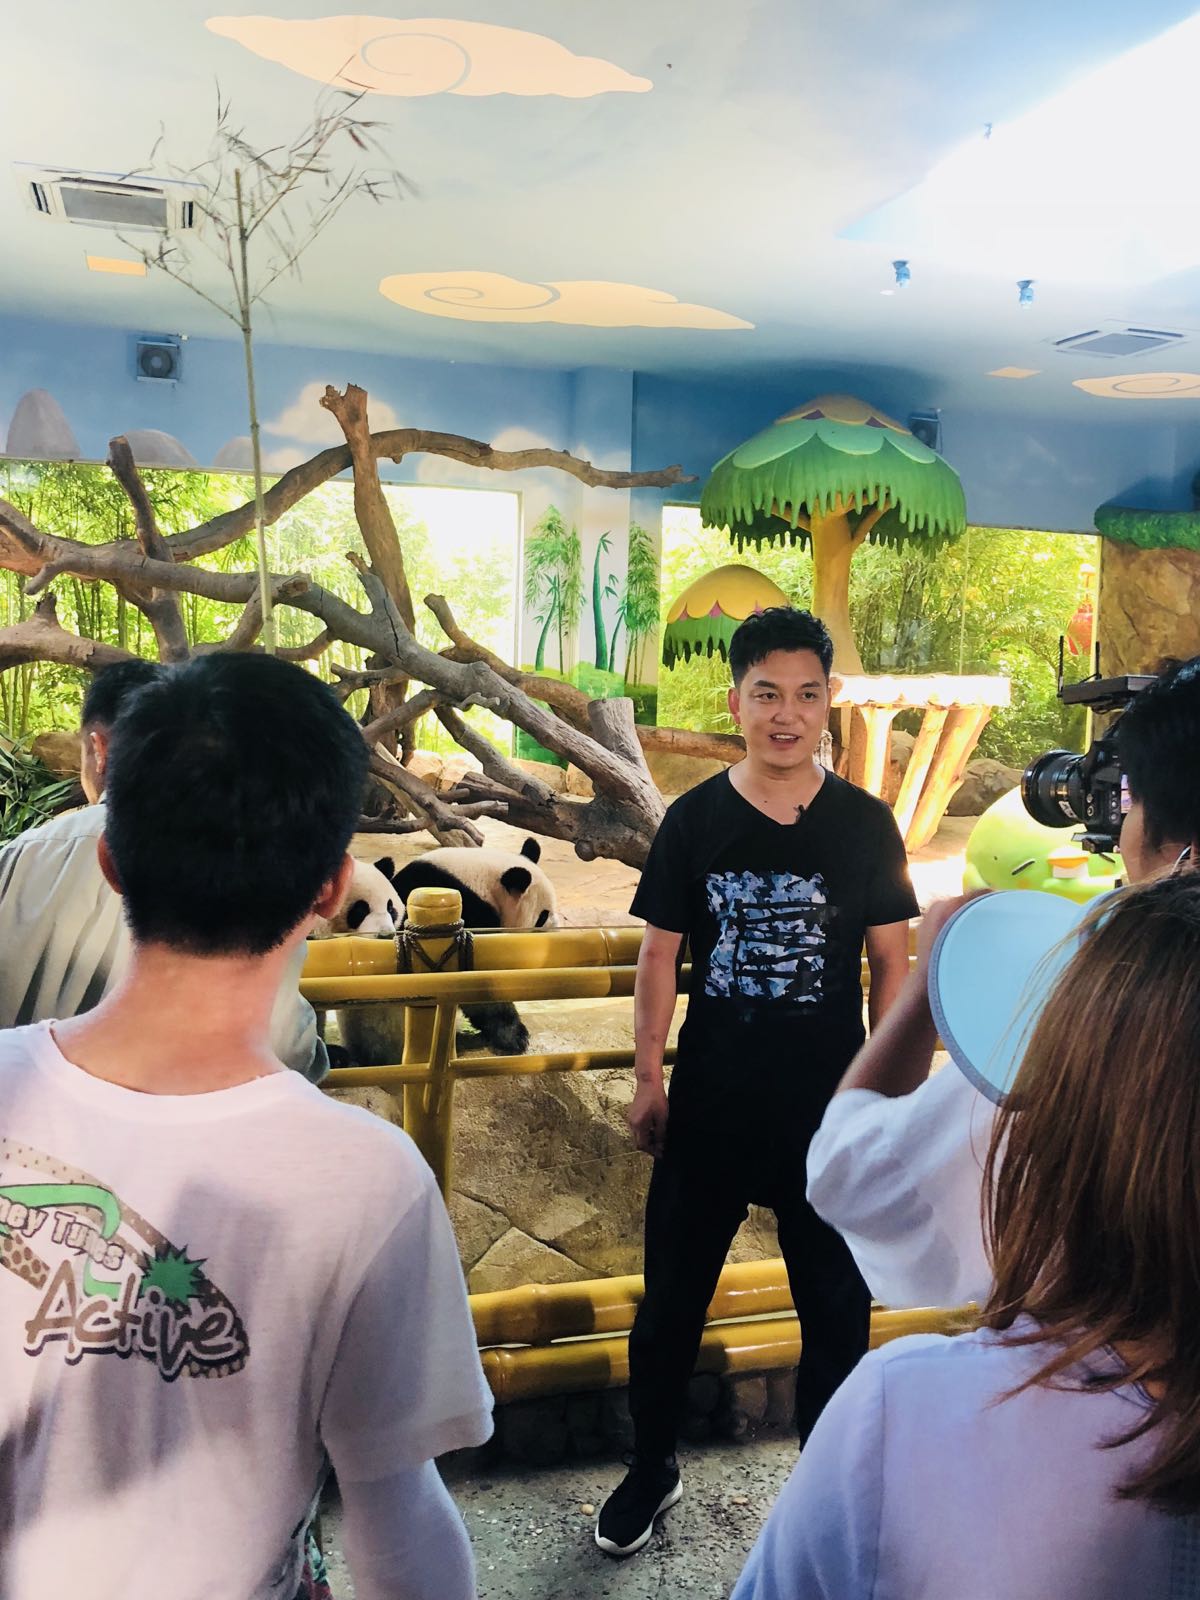 来广州的一大诱因就是当时看了湖南卫视的“奇妙的朋友”，对长隆野生动物园